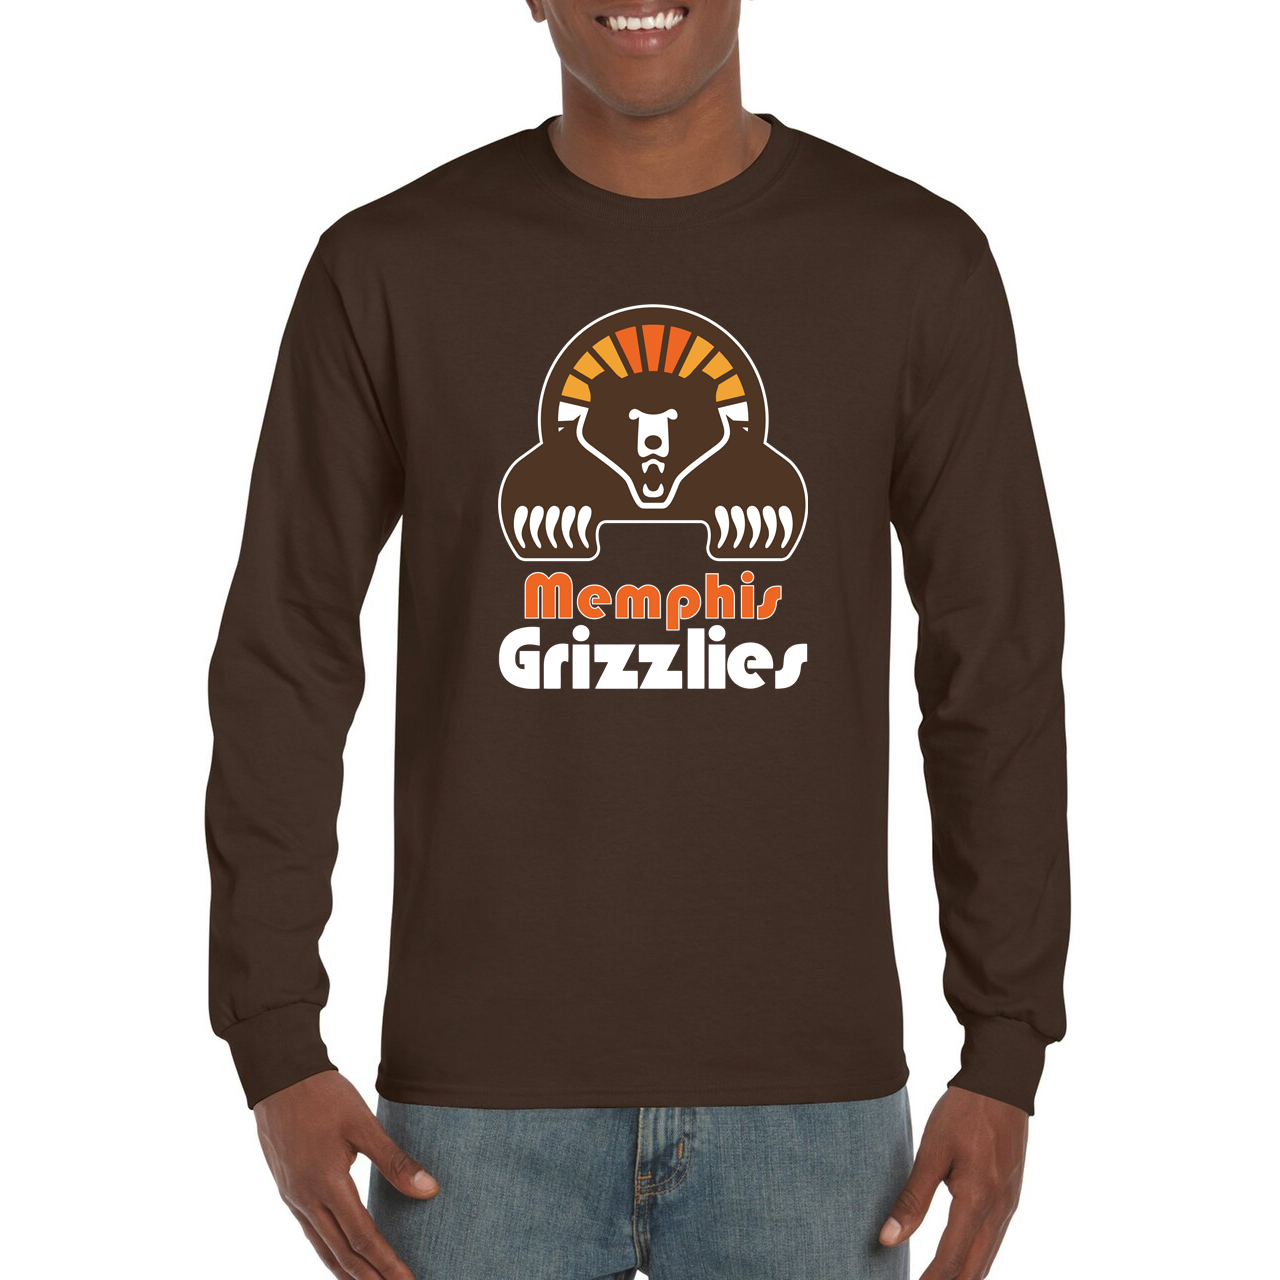 Memphis Grizzlies Vintage T Shirt Size L for Sale in Fremont, CA - OfferUp